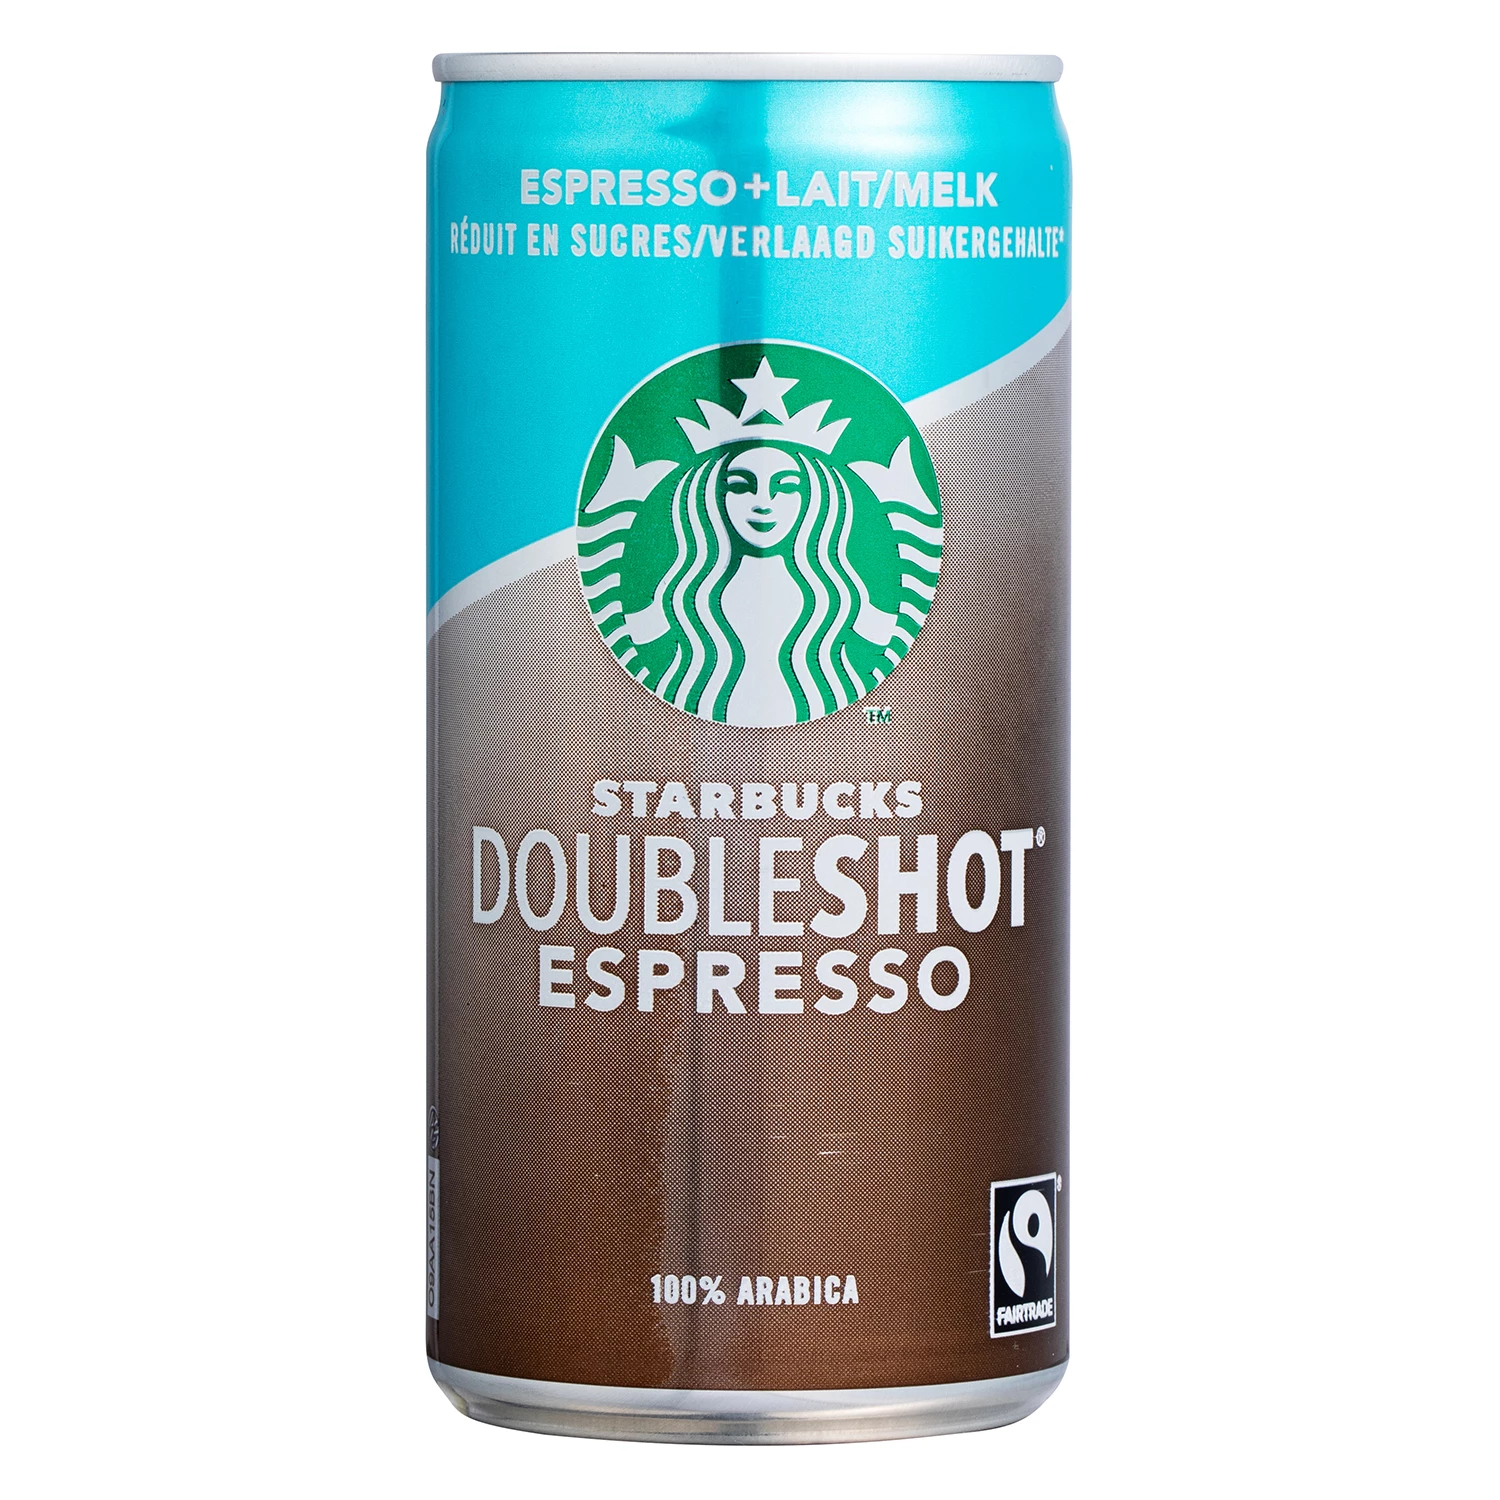 Doubleshot Espresso reduzido em açúcares 200ml - STARBUCKS